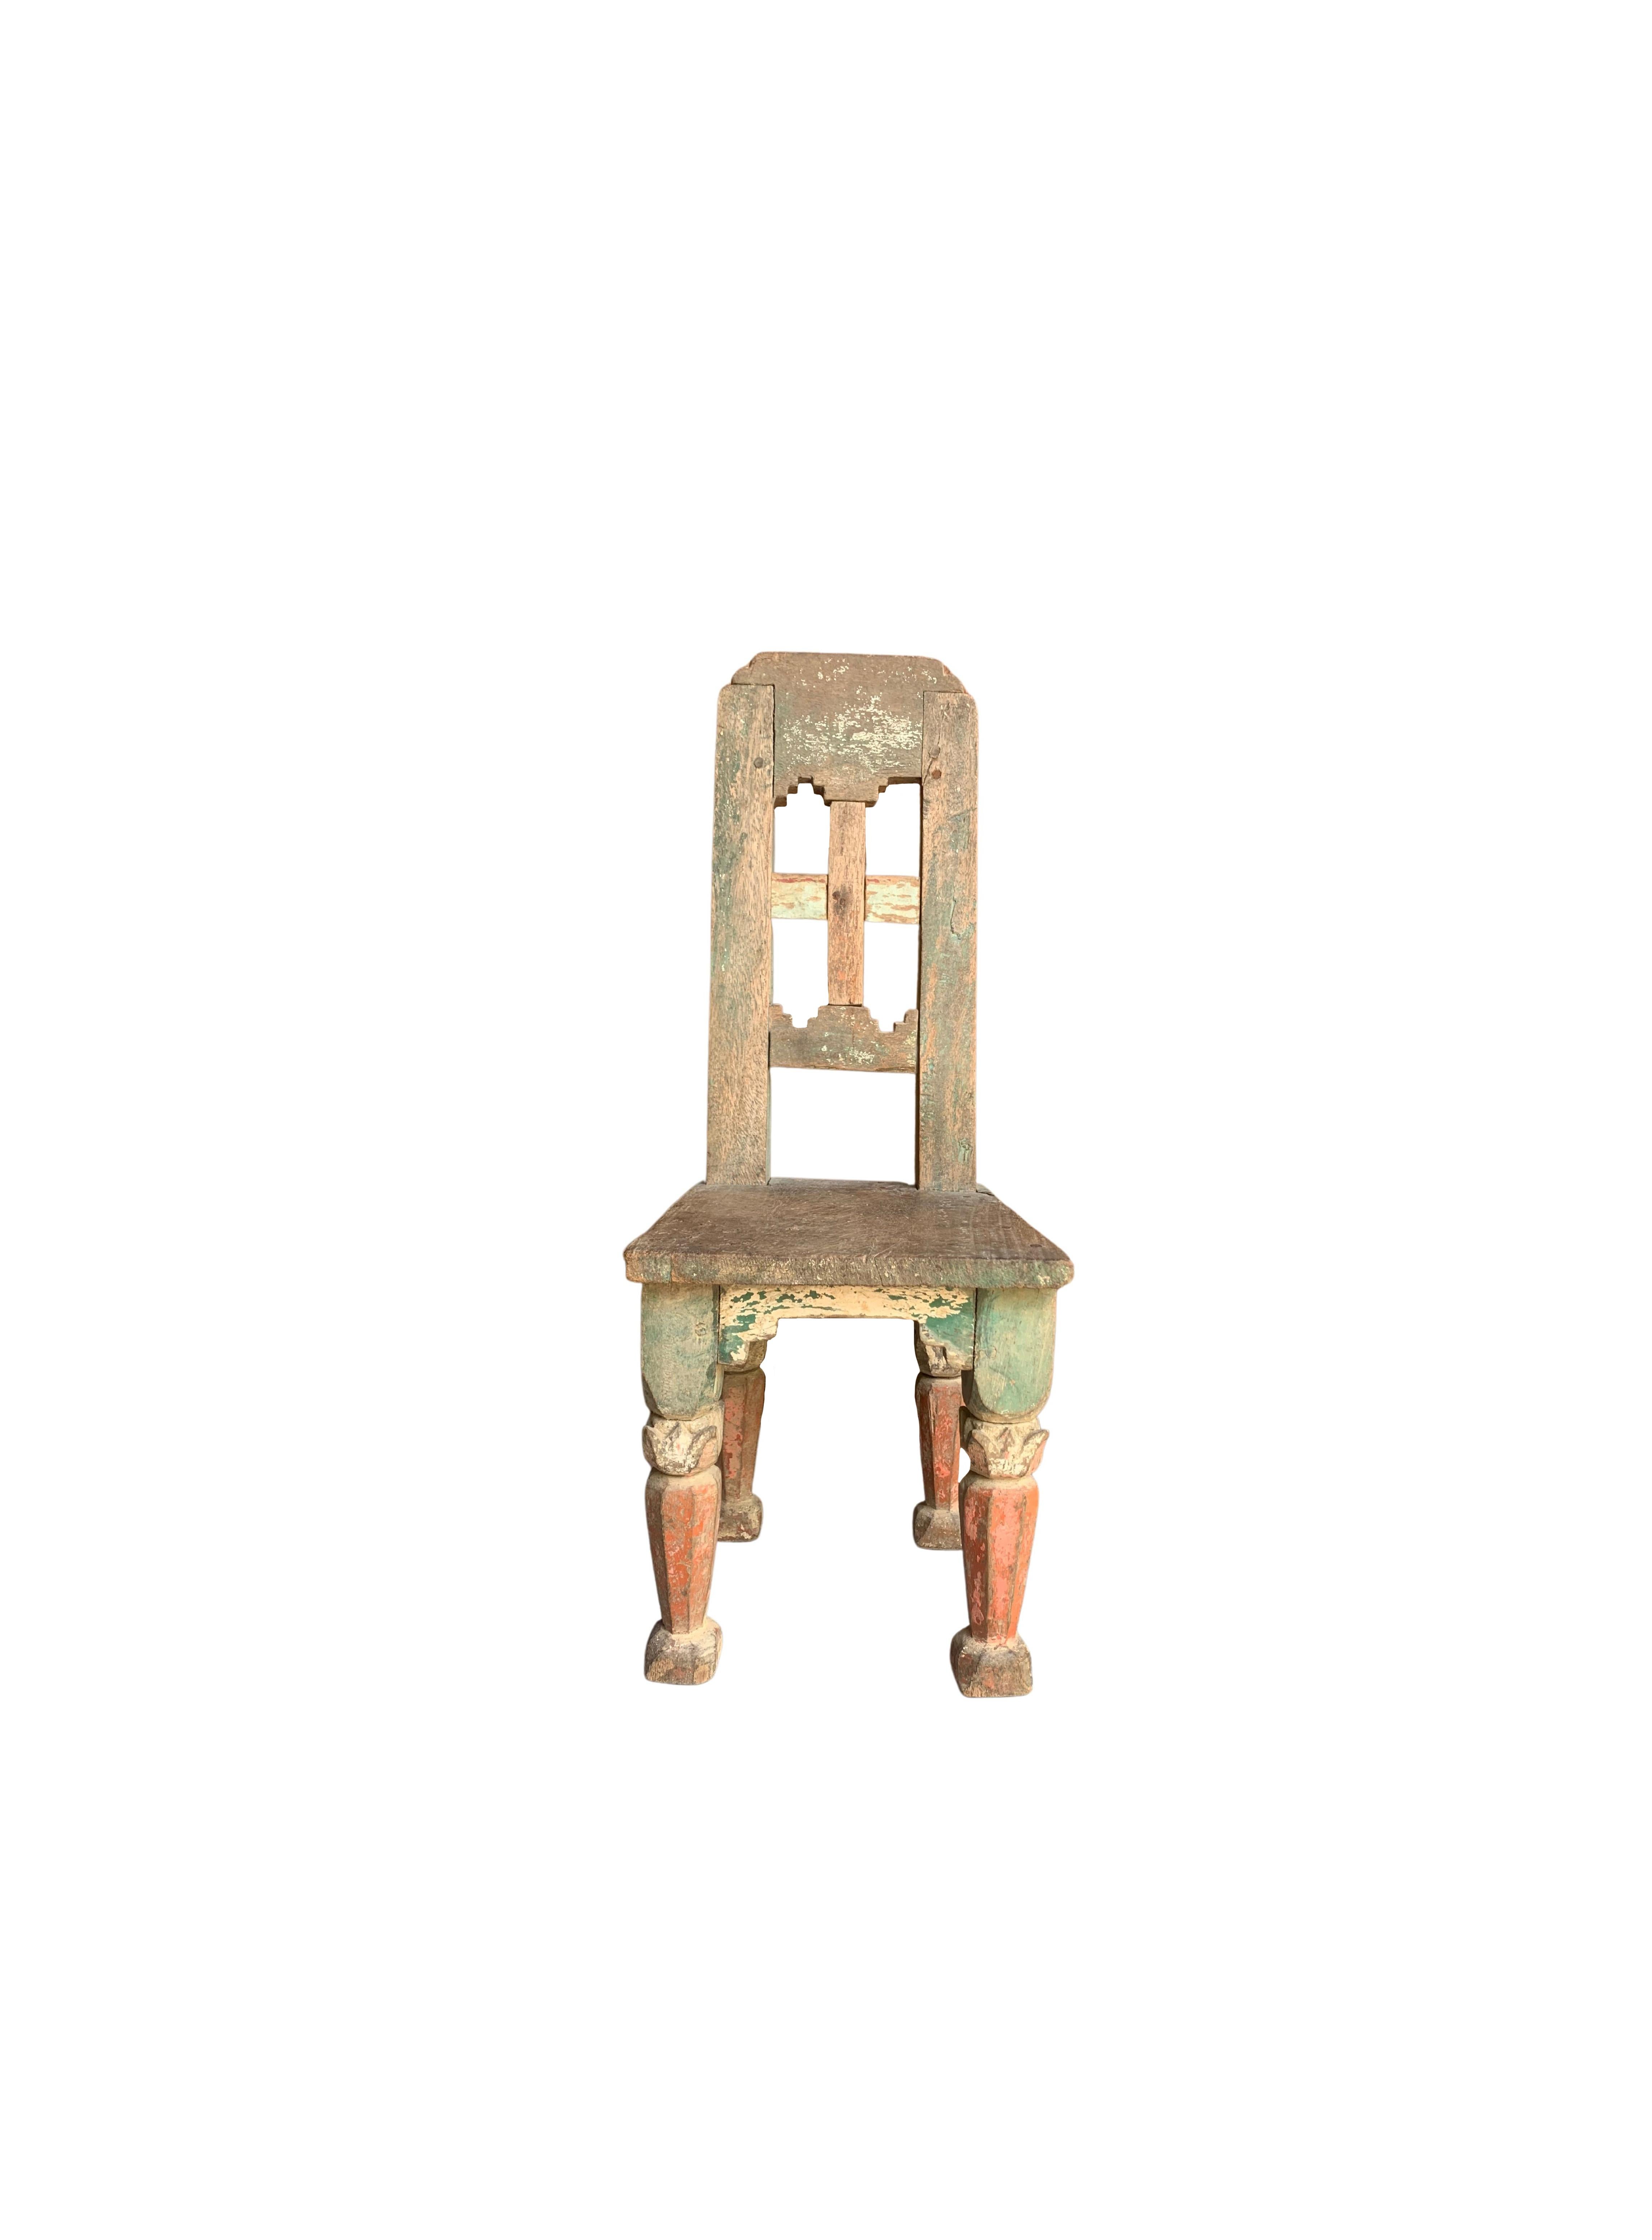 Mini-Stühle wie diese waren einst auf den indonesischen Tabakplantagen weit verbreitet, wo die Arbeiter saßen und den angebauten Tabak schnitten. Der vorliegende Ministuhl ist ein elegantes Beispiel für einen solchen Stuhl. Er ist aus Teakholz